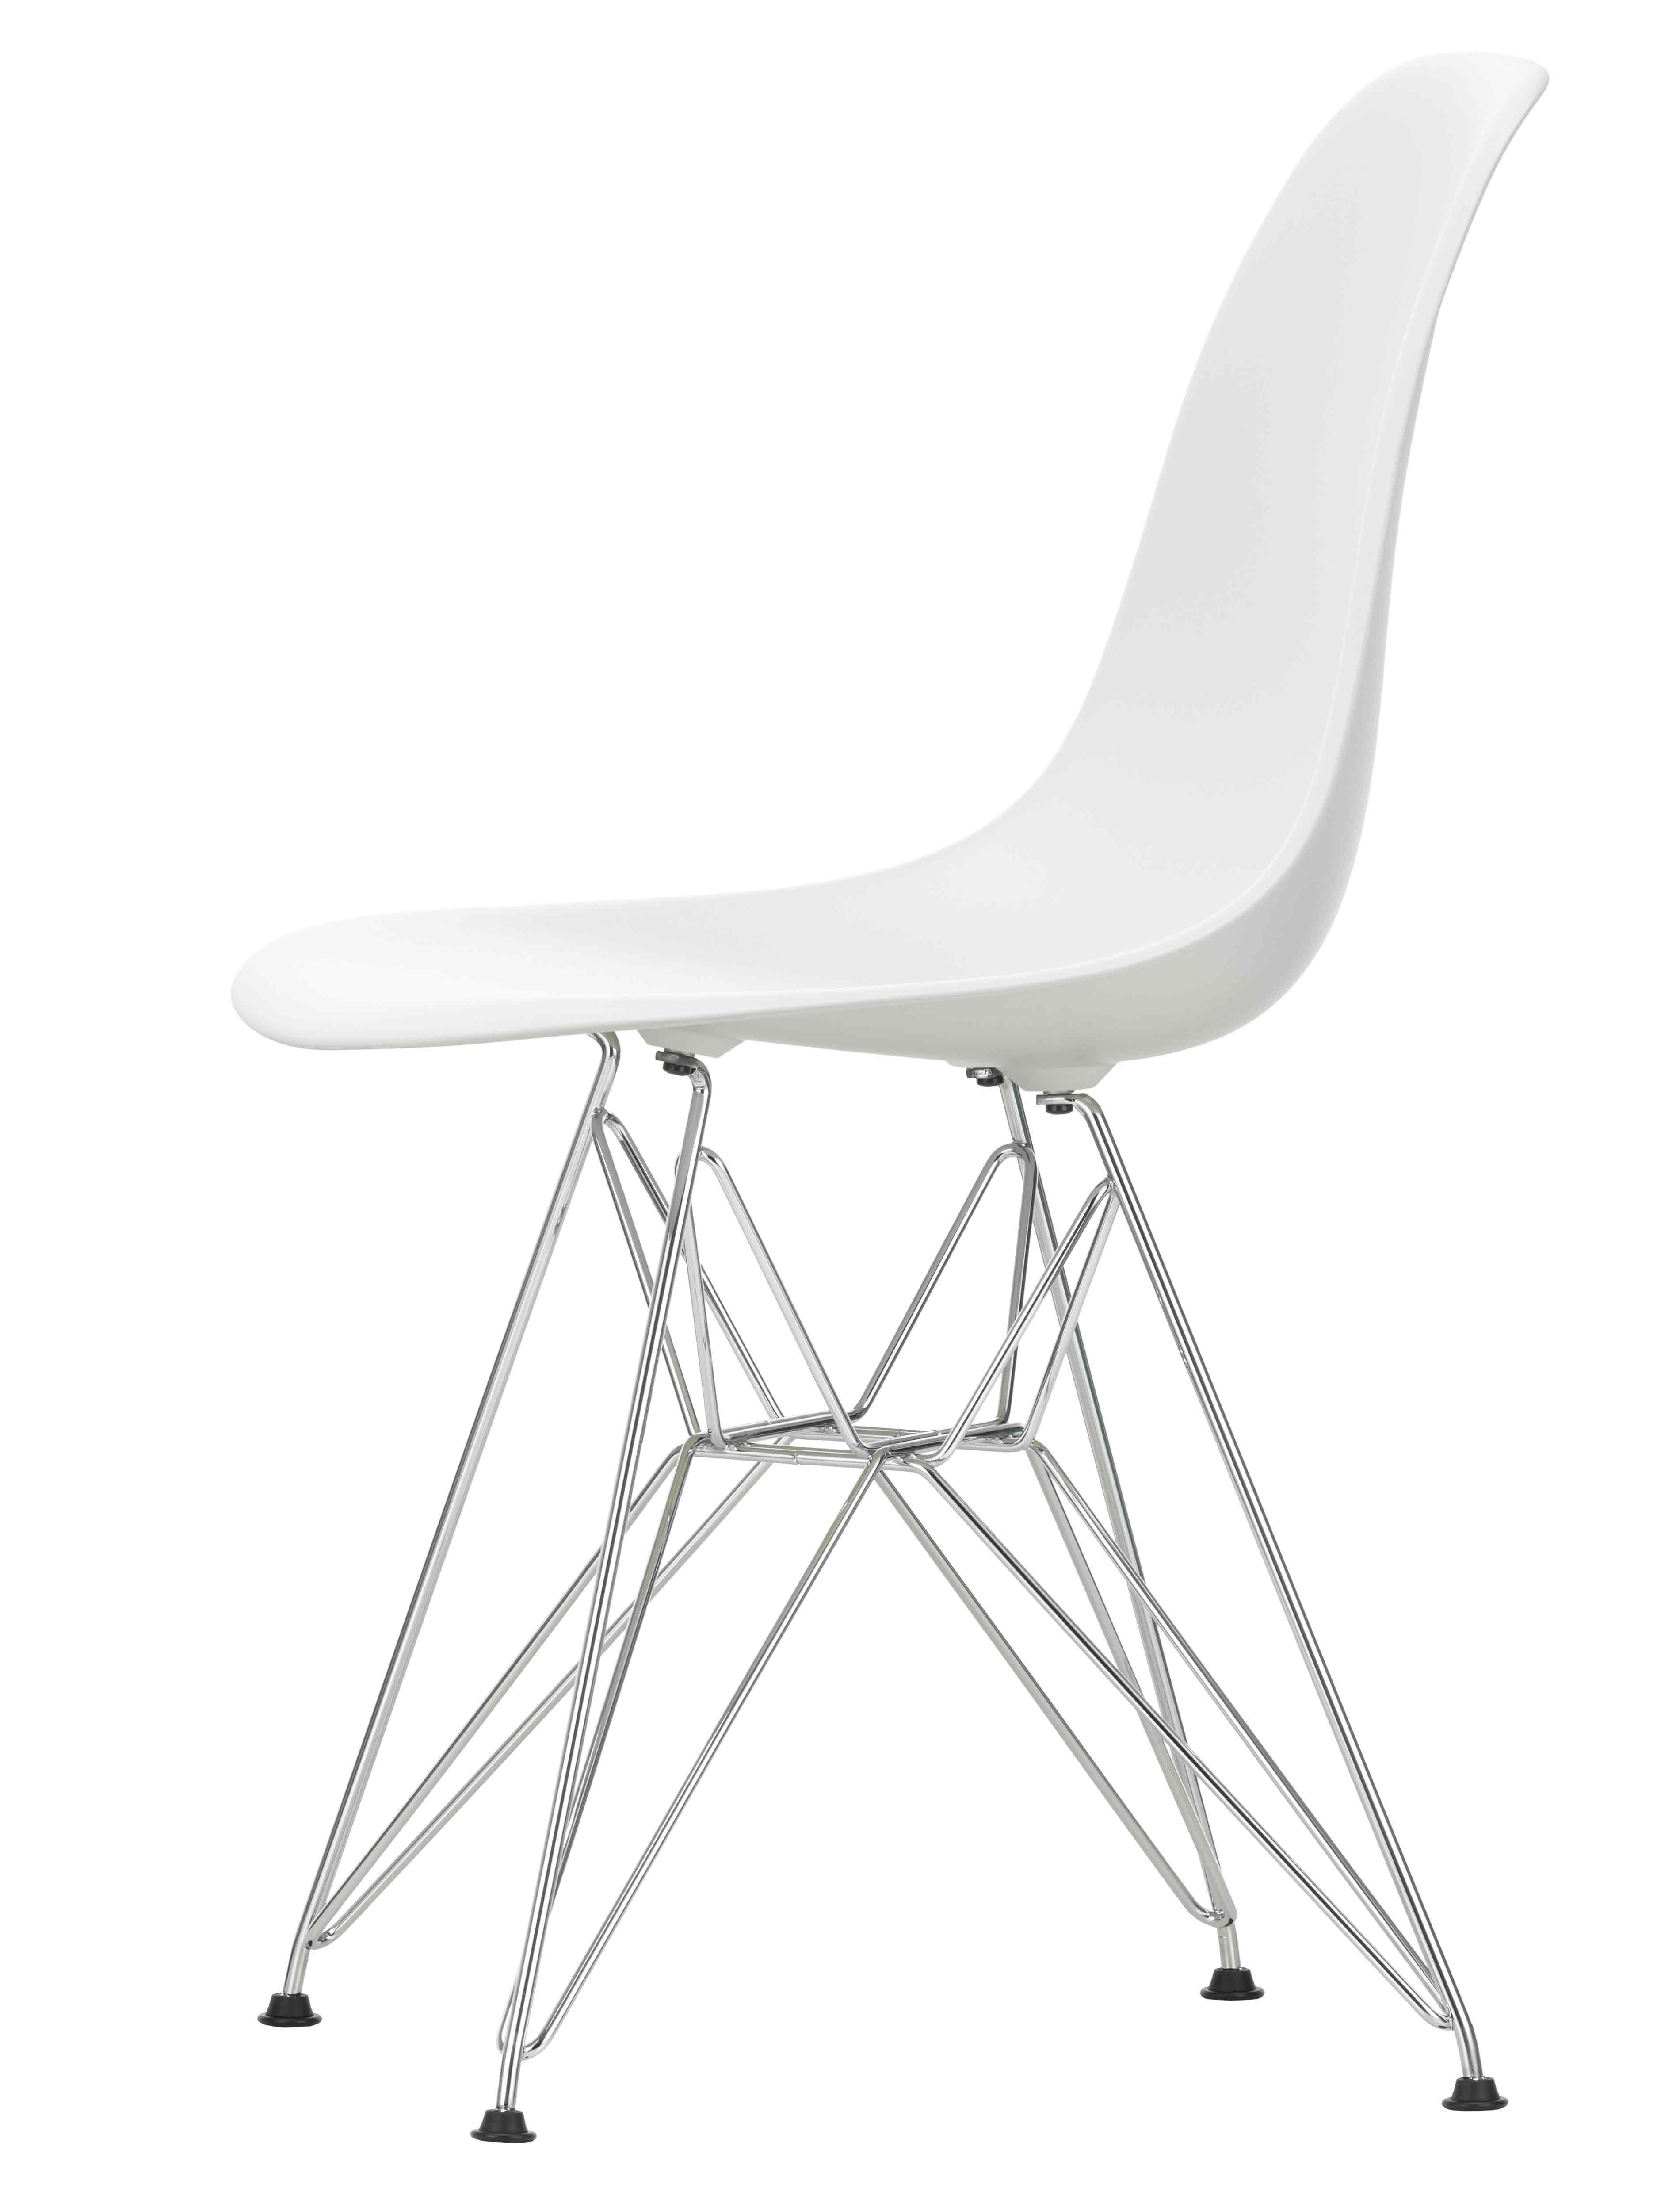 Designerstuhl Side chair DSR in weiss mit Drahtuntergestell von Vitra jetzt im LHL Onlineshop kaufen – Seitansicht